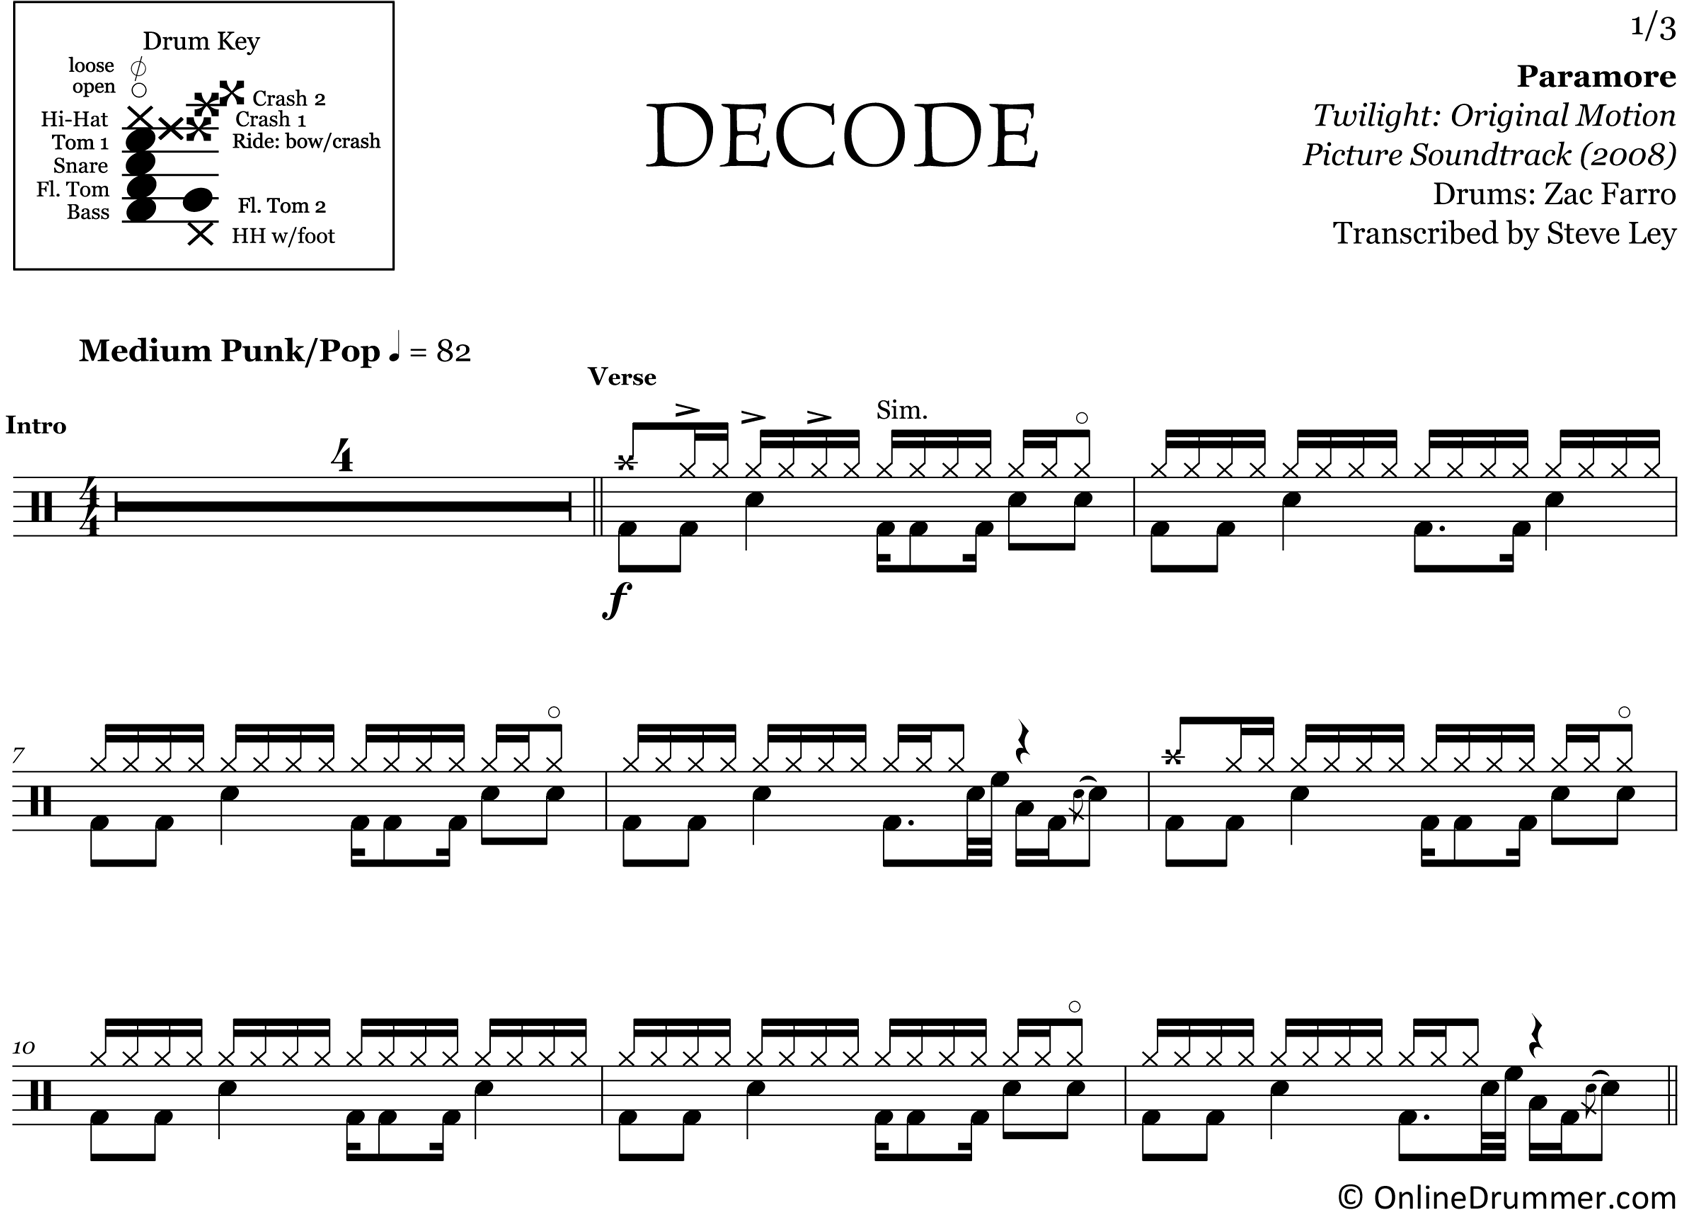 Decode - Paramore - Drum Sheet Music